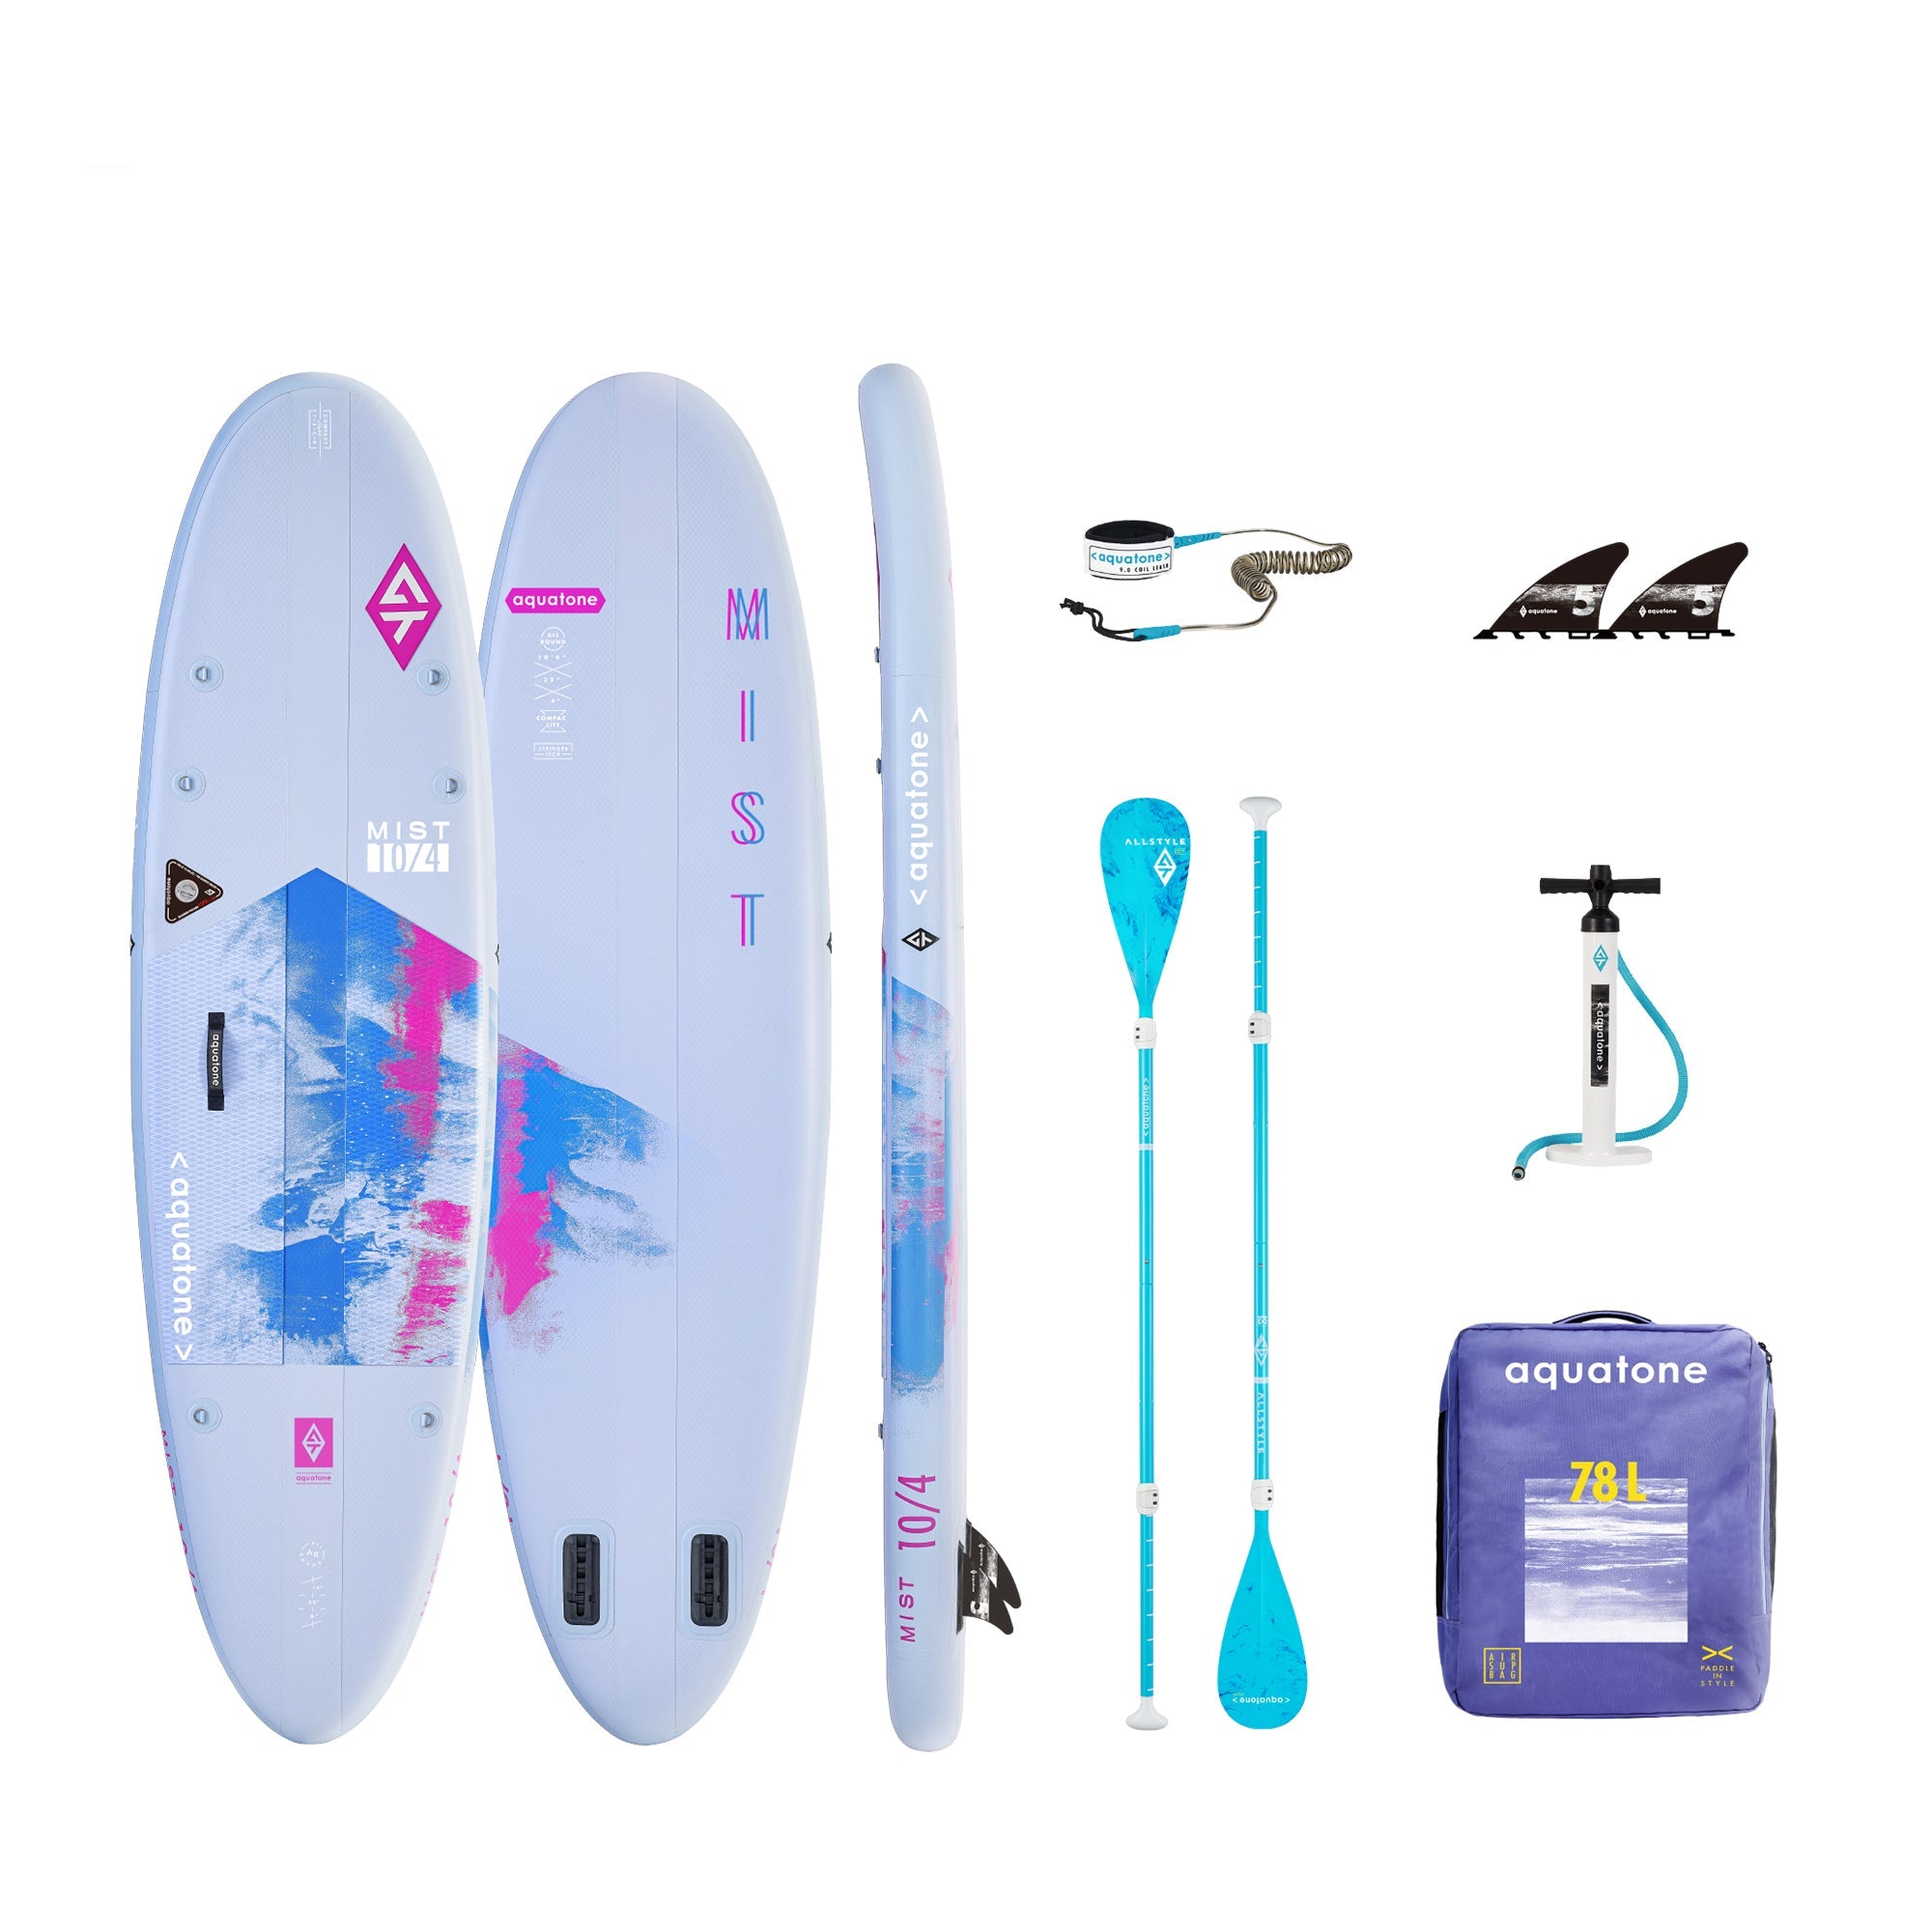 Aquatone MIST 10' 4" All-Round COMPACT SUP-Paddleboards-Aquatone-1